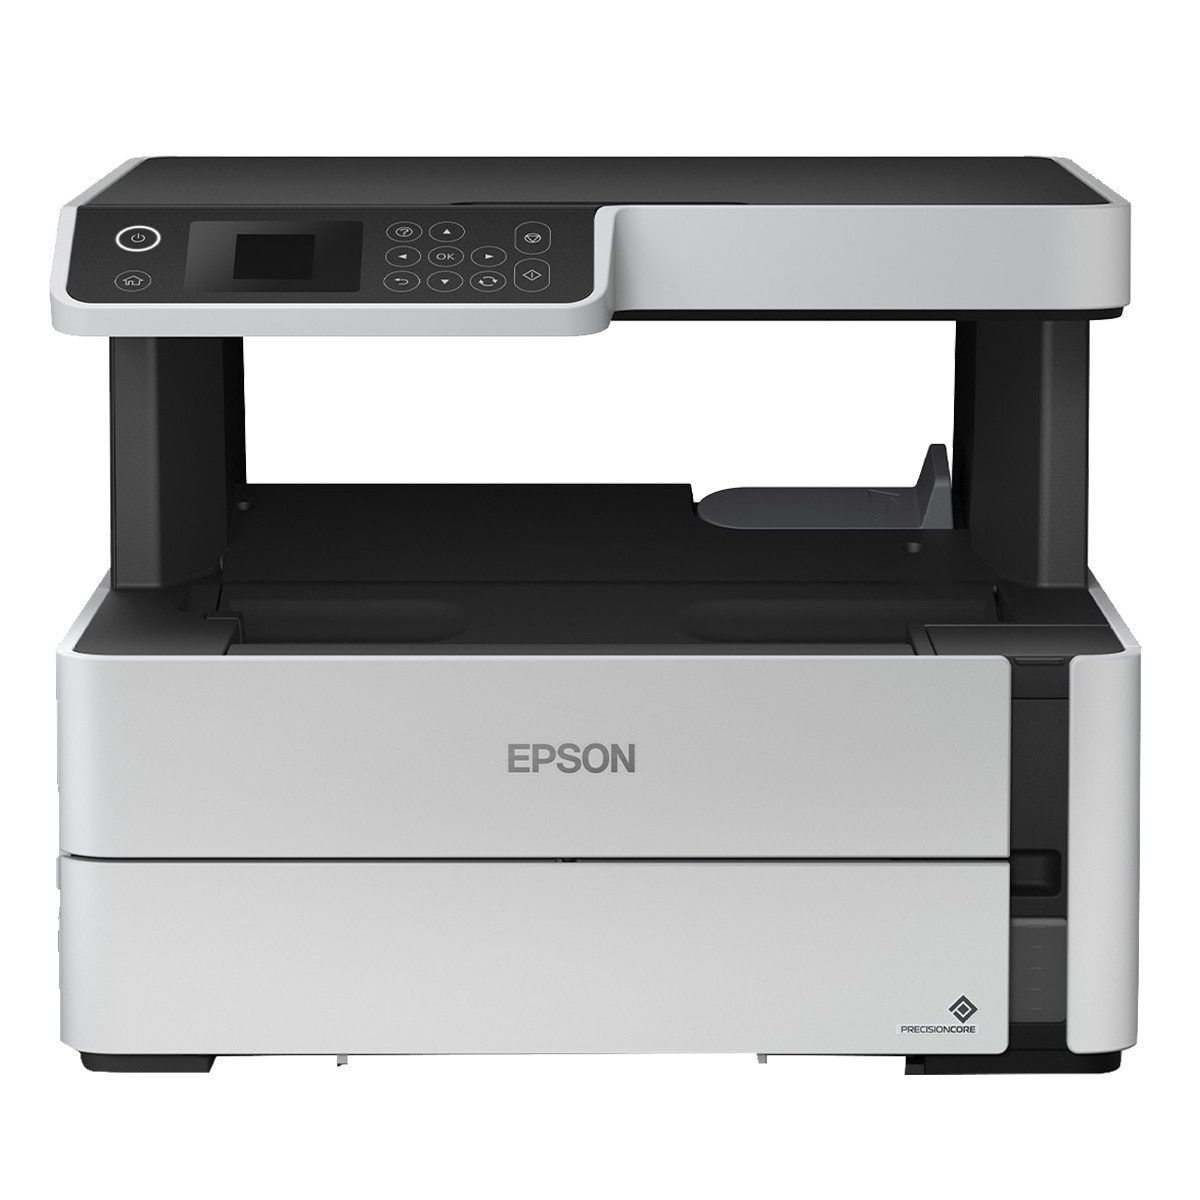 EPSON 黑白3合1連續供墨複合機 M2170 (內含 3 瓶黑色墨水)